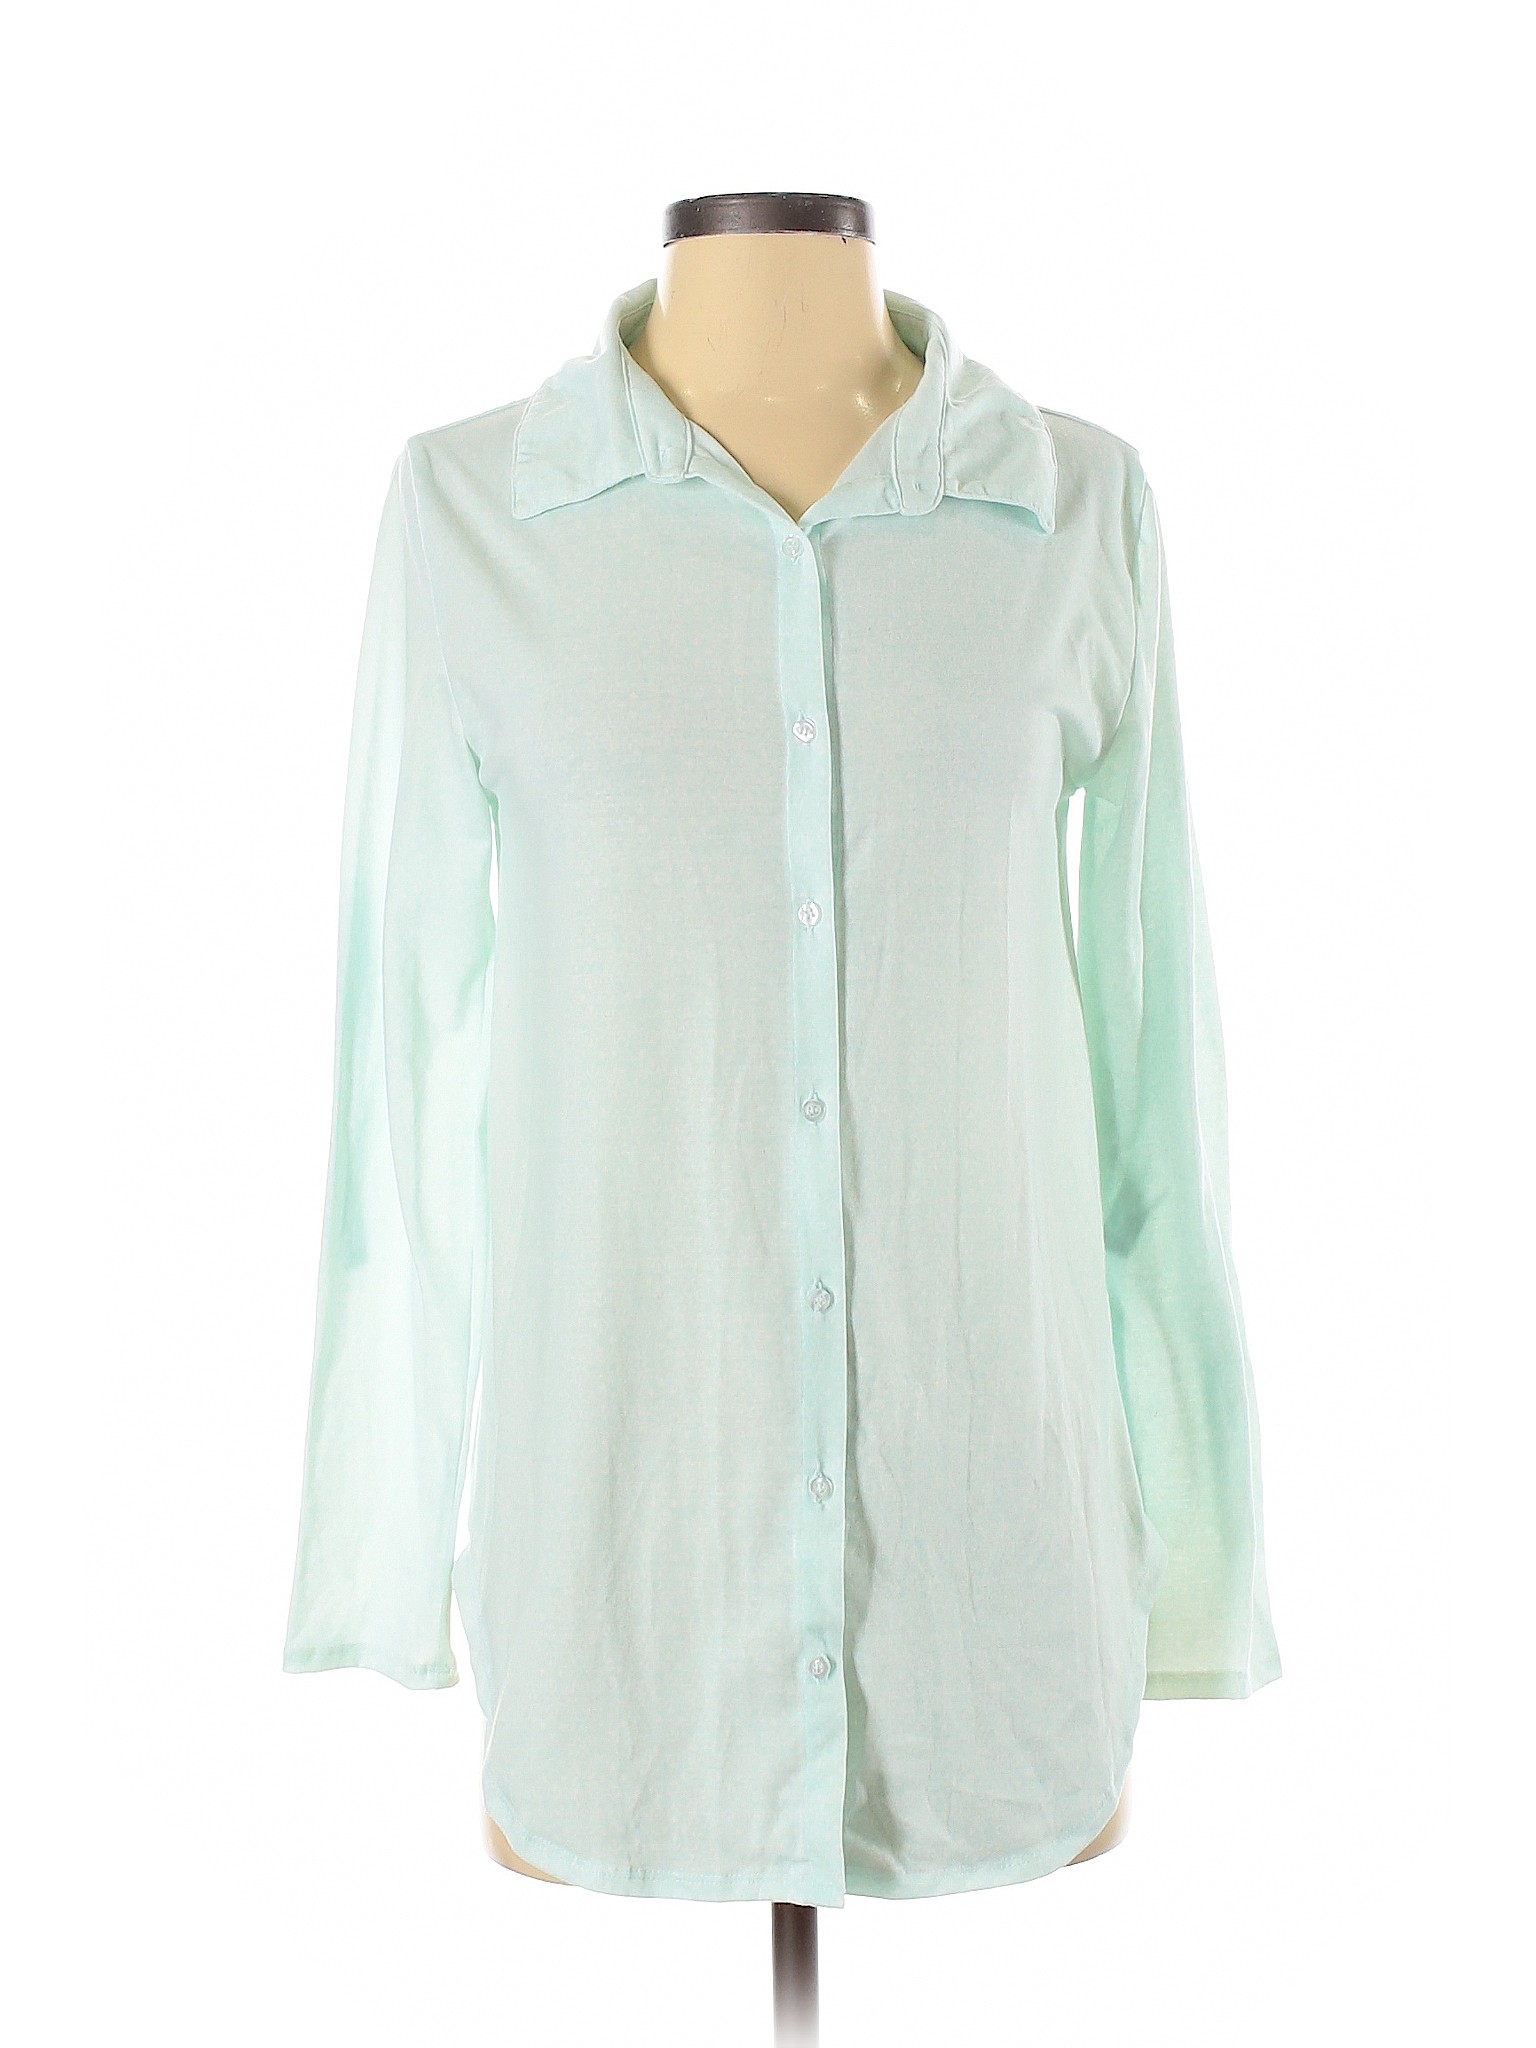 Lularoe Women Green Long Sleeve Button-Down Shirt XS | eBay